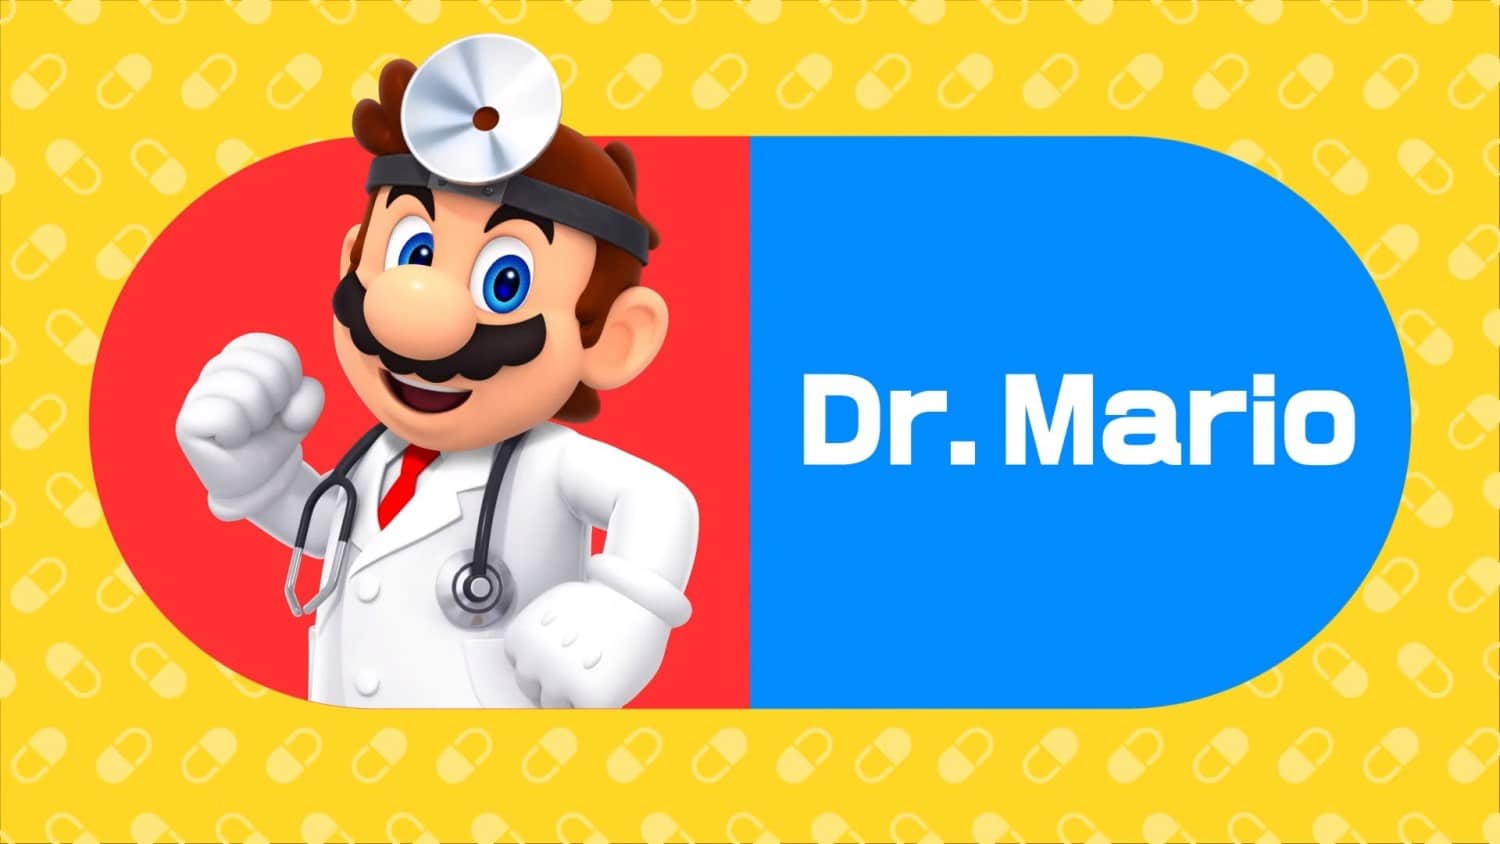 Dr. Mario World ha conseguido 5 millones de descargas y 500.000$ de ingresos en su primera semana